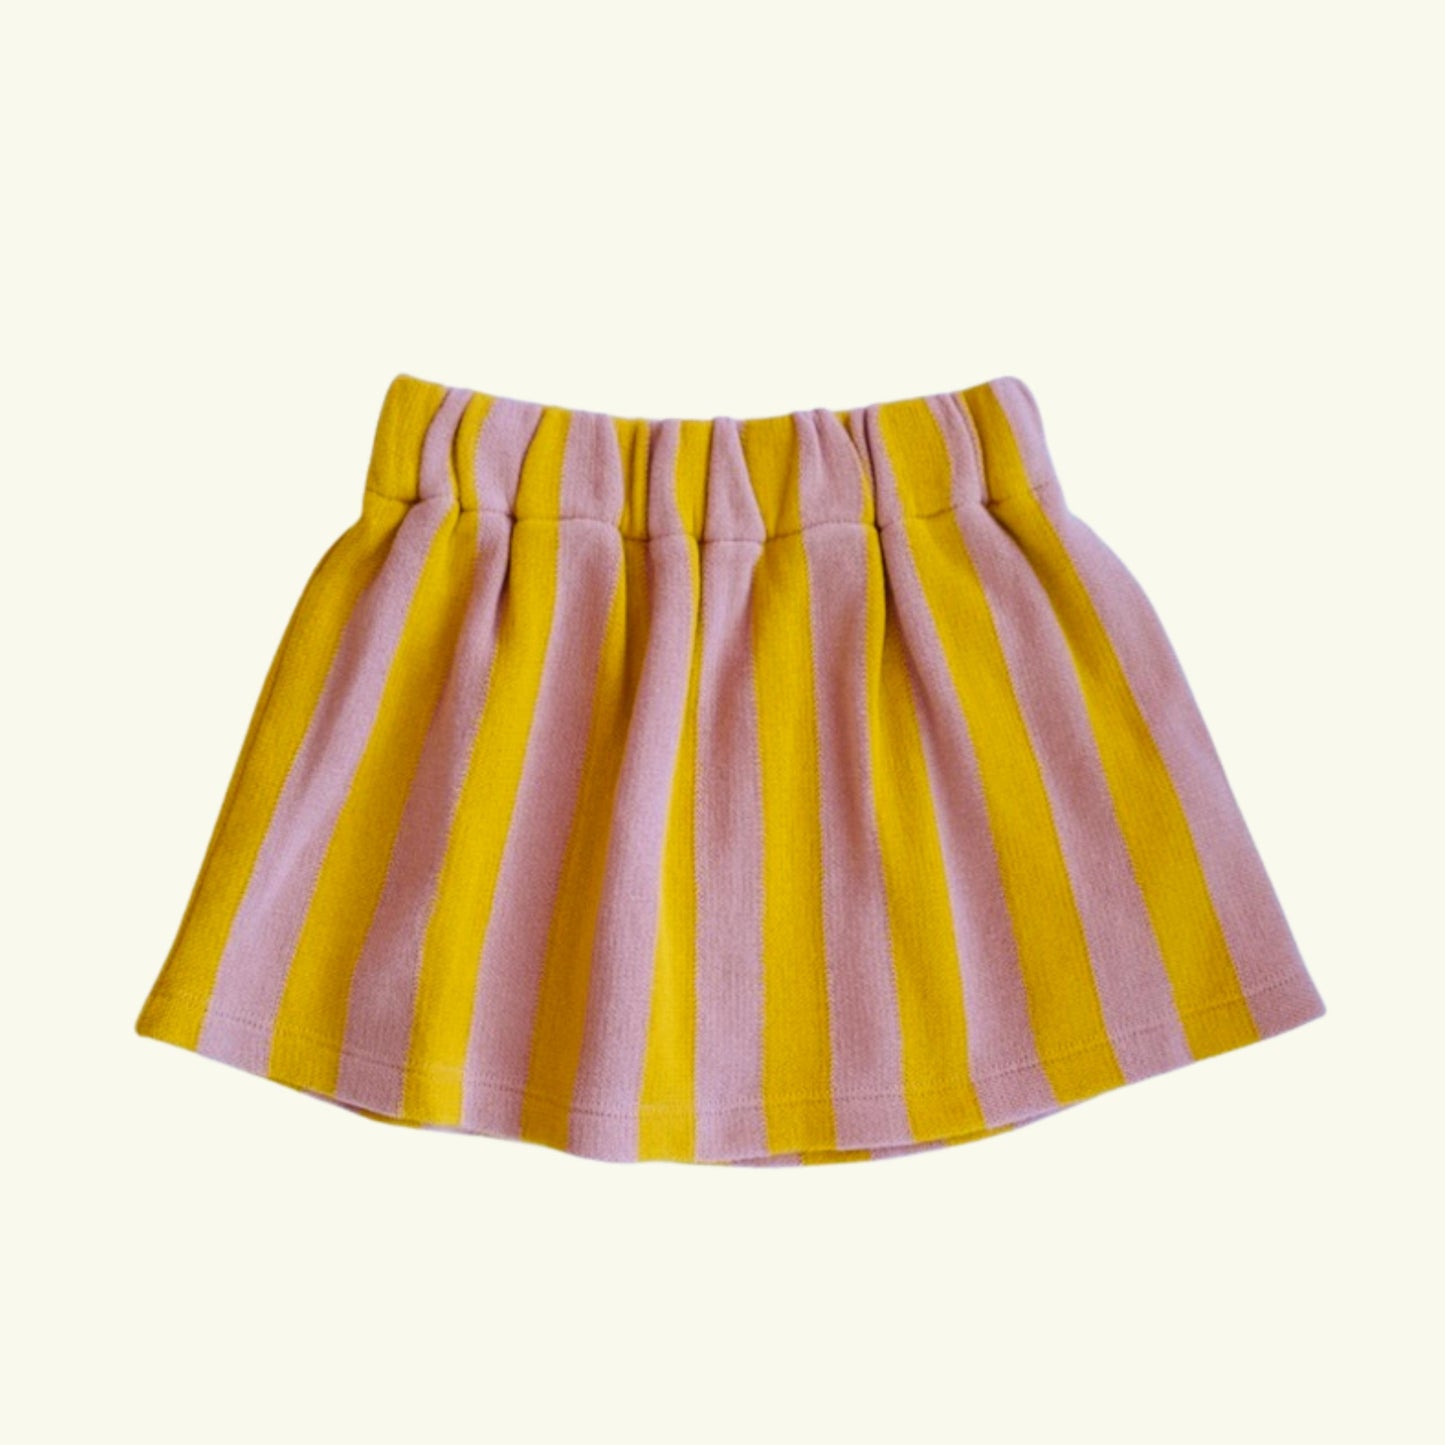 Evie Skirt, Golden Stripe